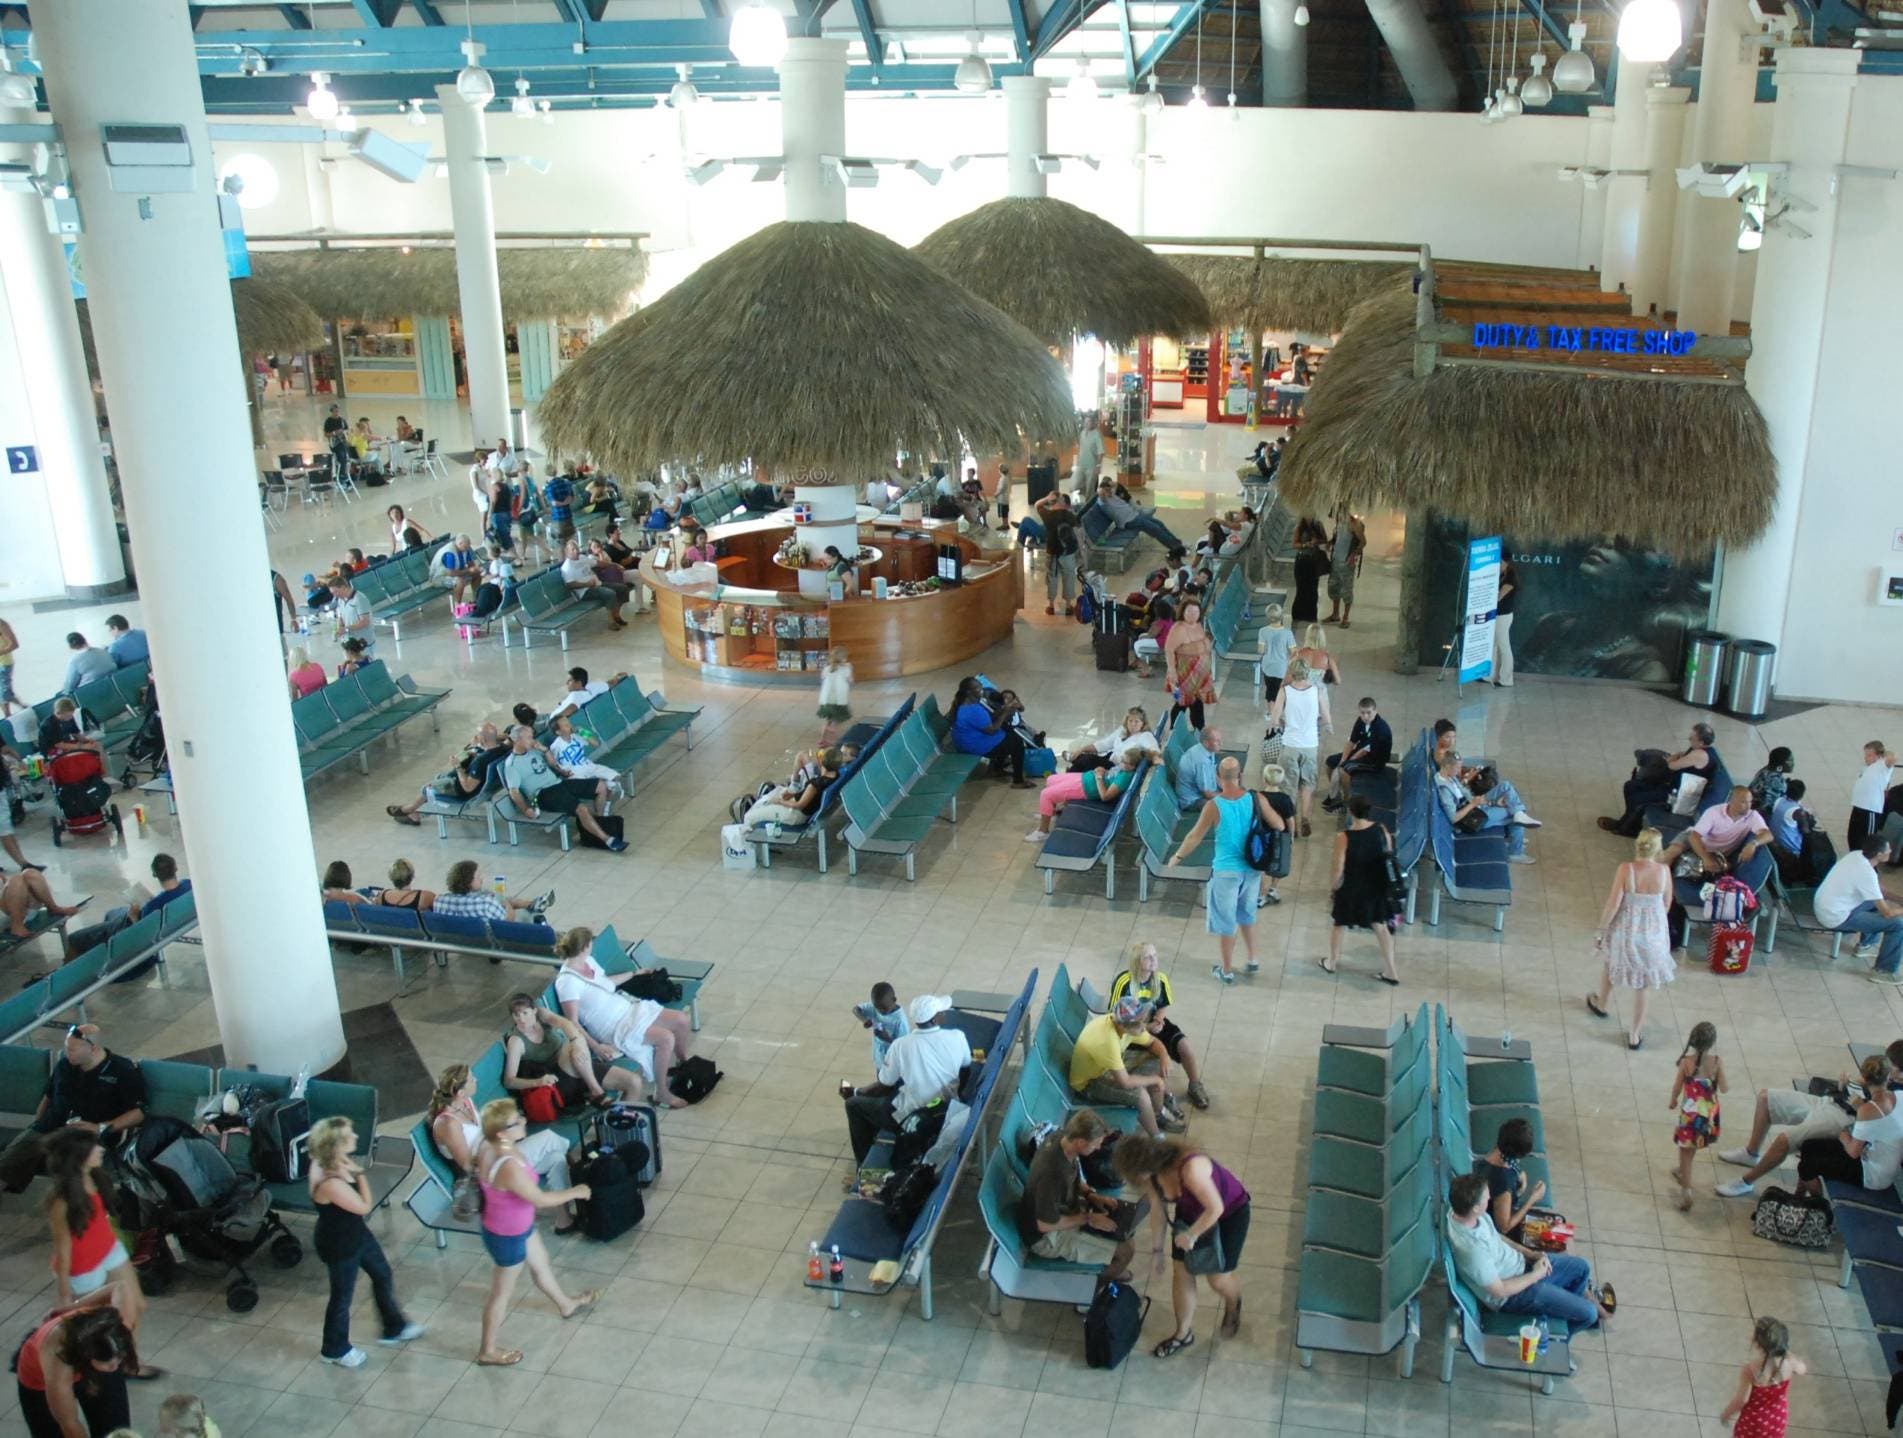 Acuerdo aumentaría los pasajeros a Punta Cana